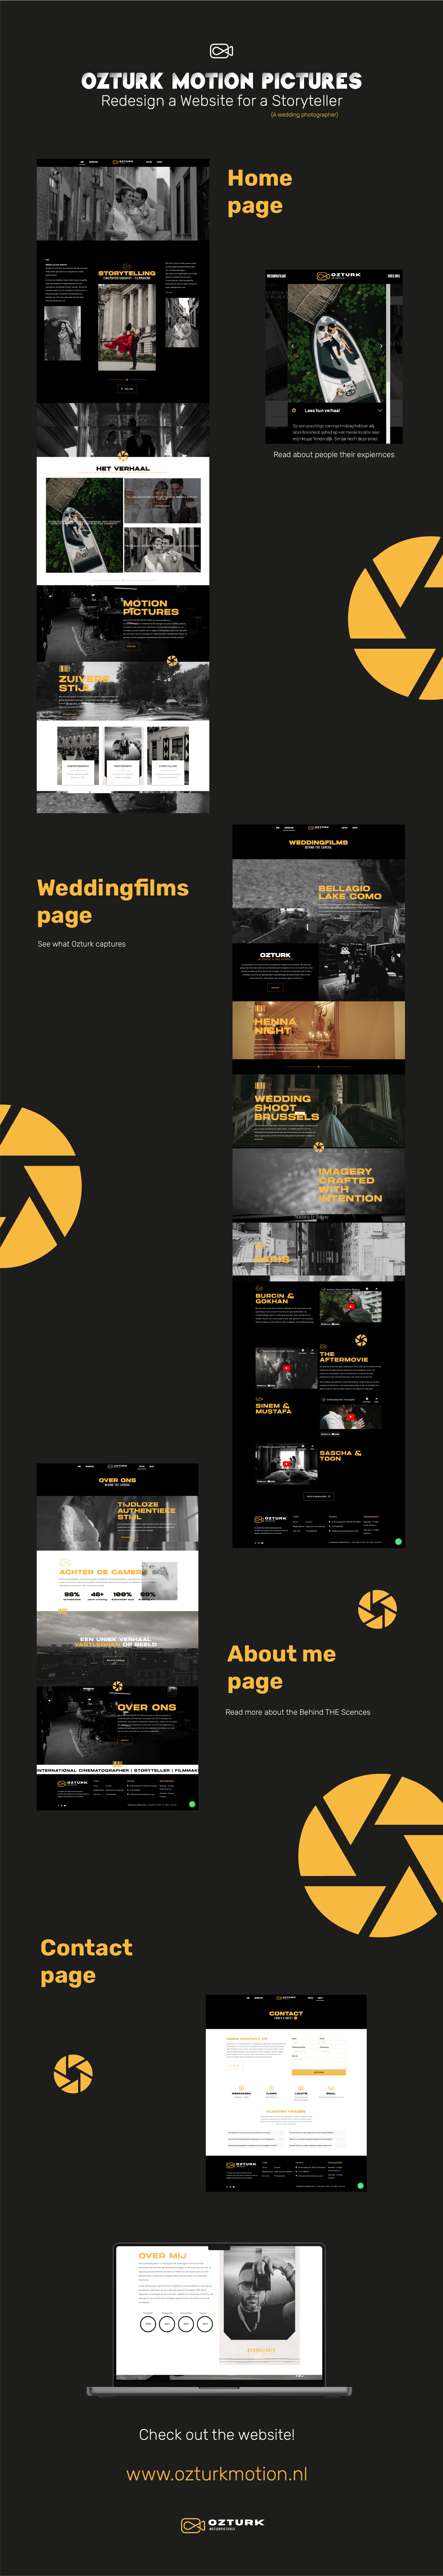 redesign UX design Webdesign visual identity visual design UI UI/UX Website